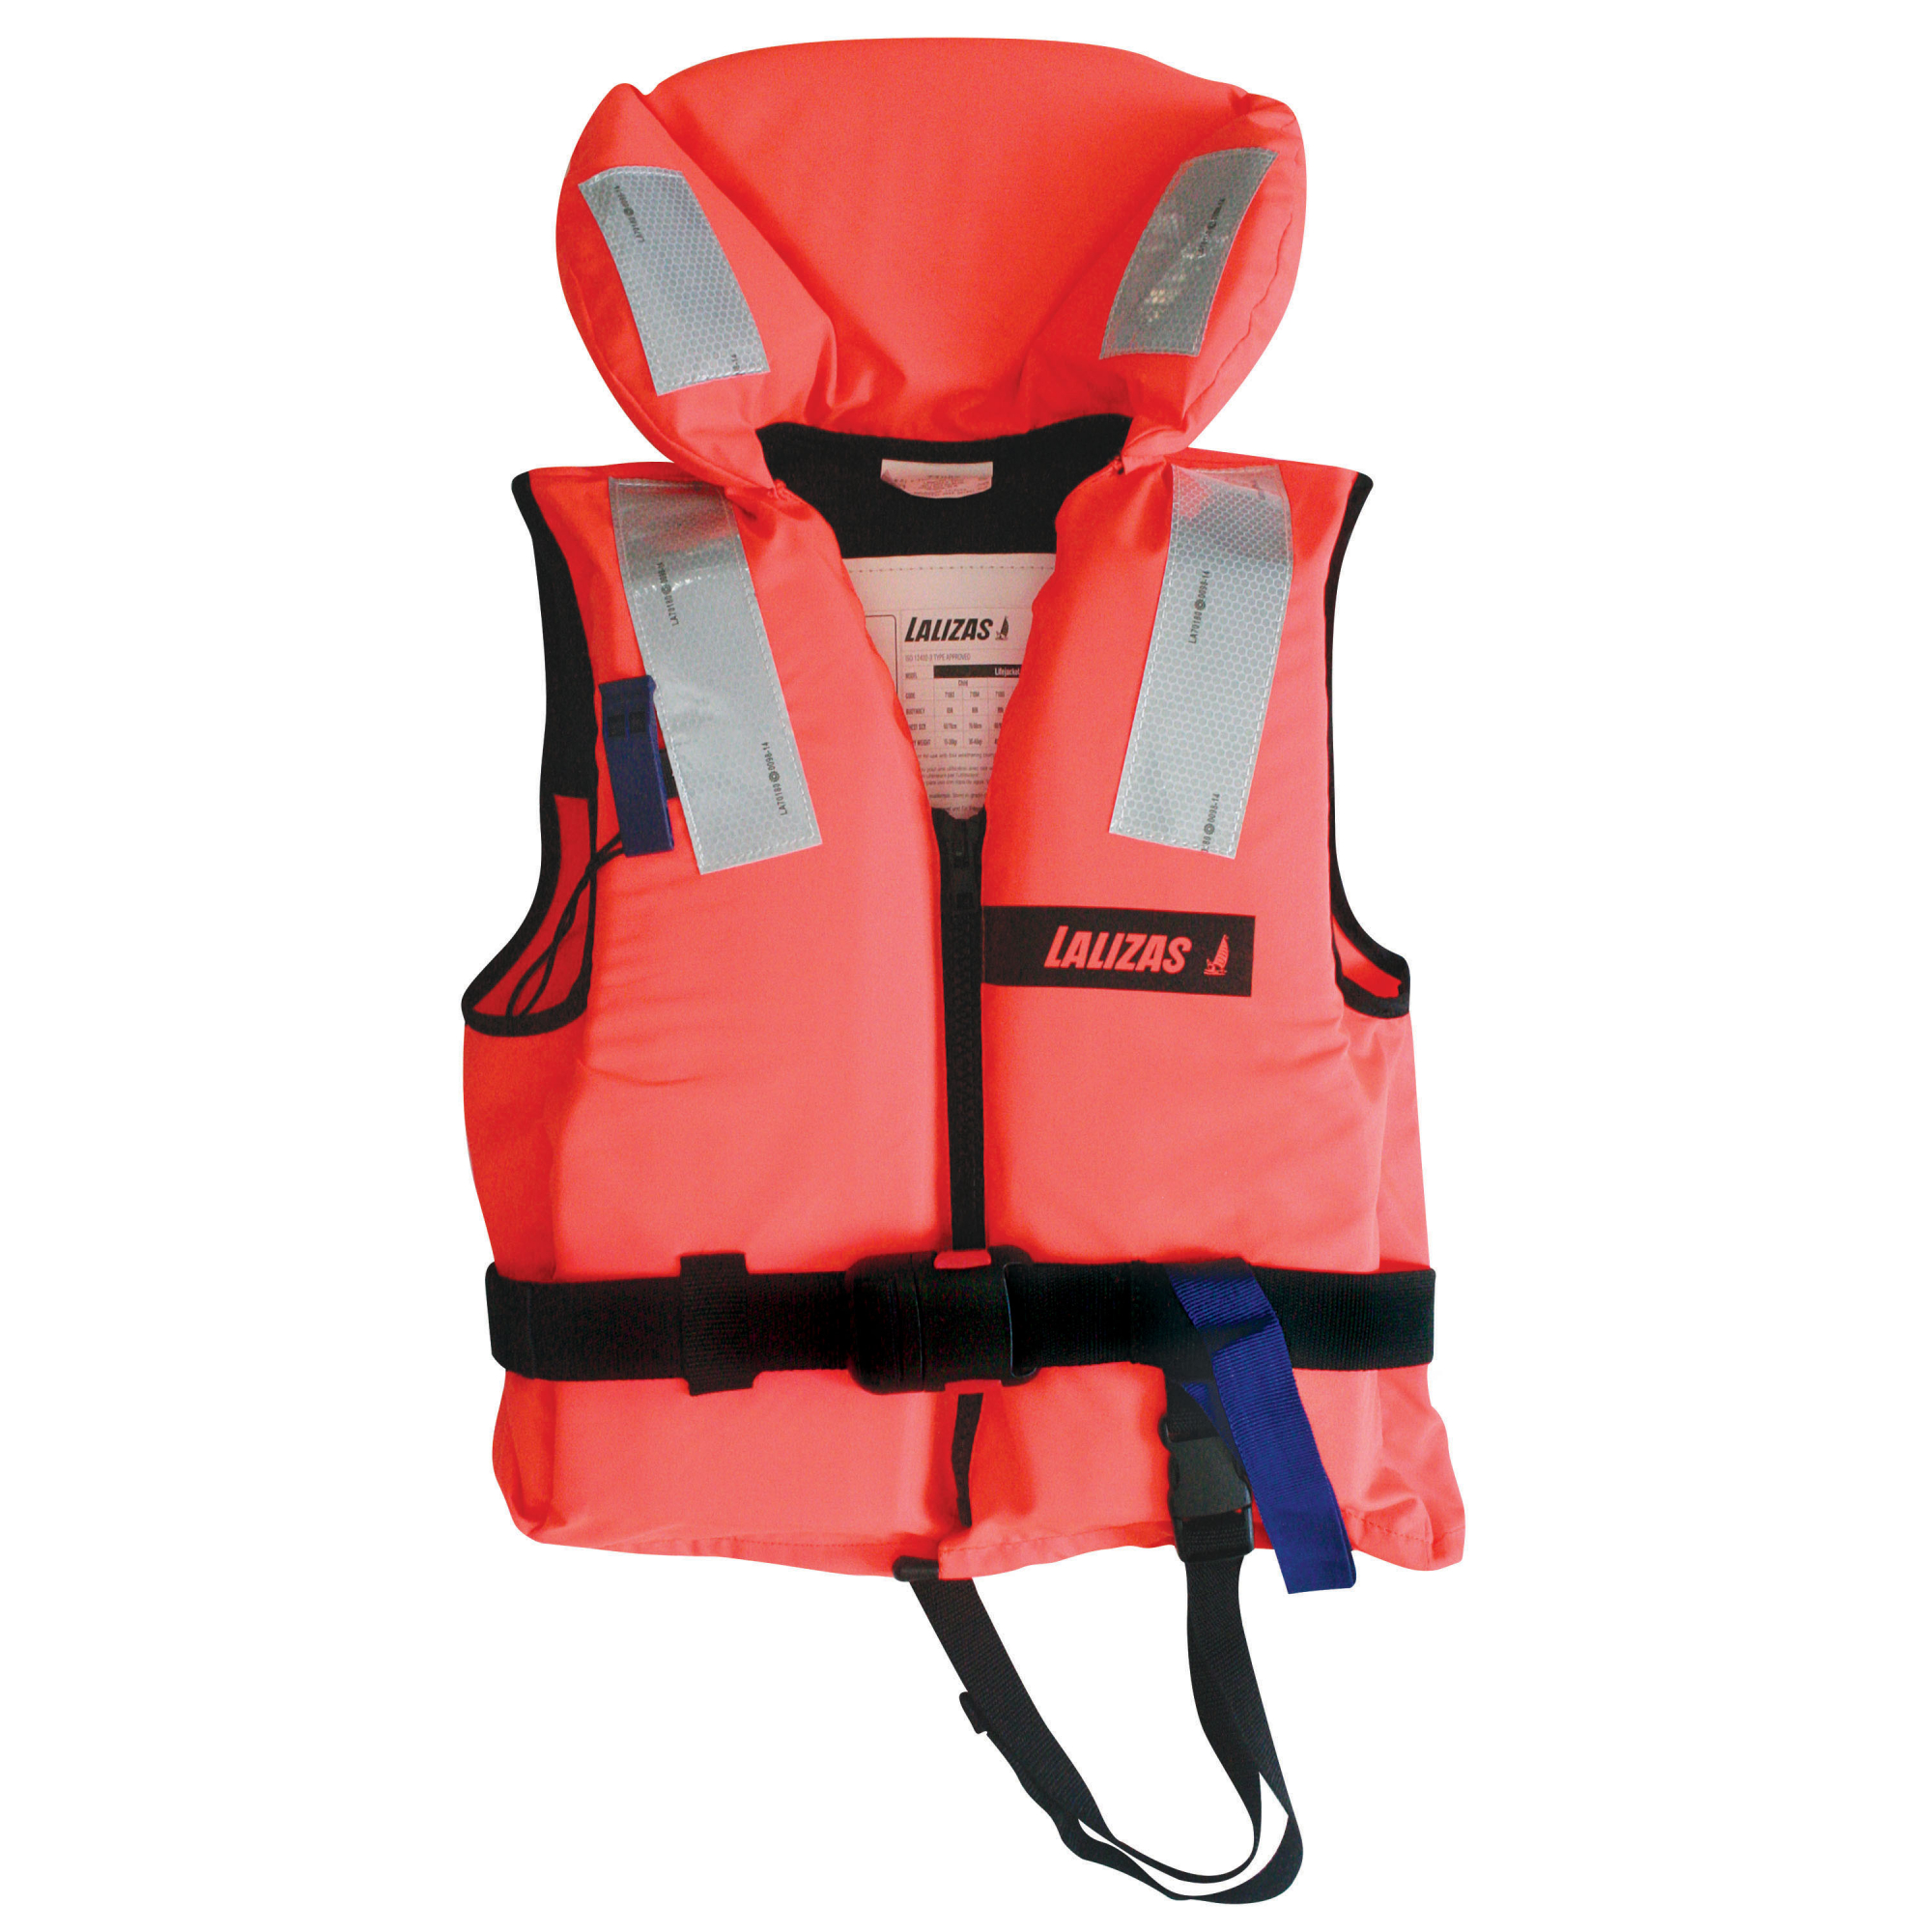 Пенопластовый спасательный жилет LALIZAS Lifejacket 100N 710812 ISO 12402-4 одобрено SAMSA и NSRS 70-90 кг обхват груди 110-120 см